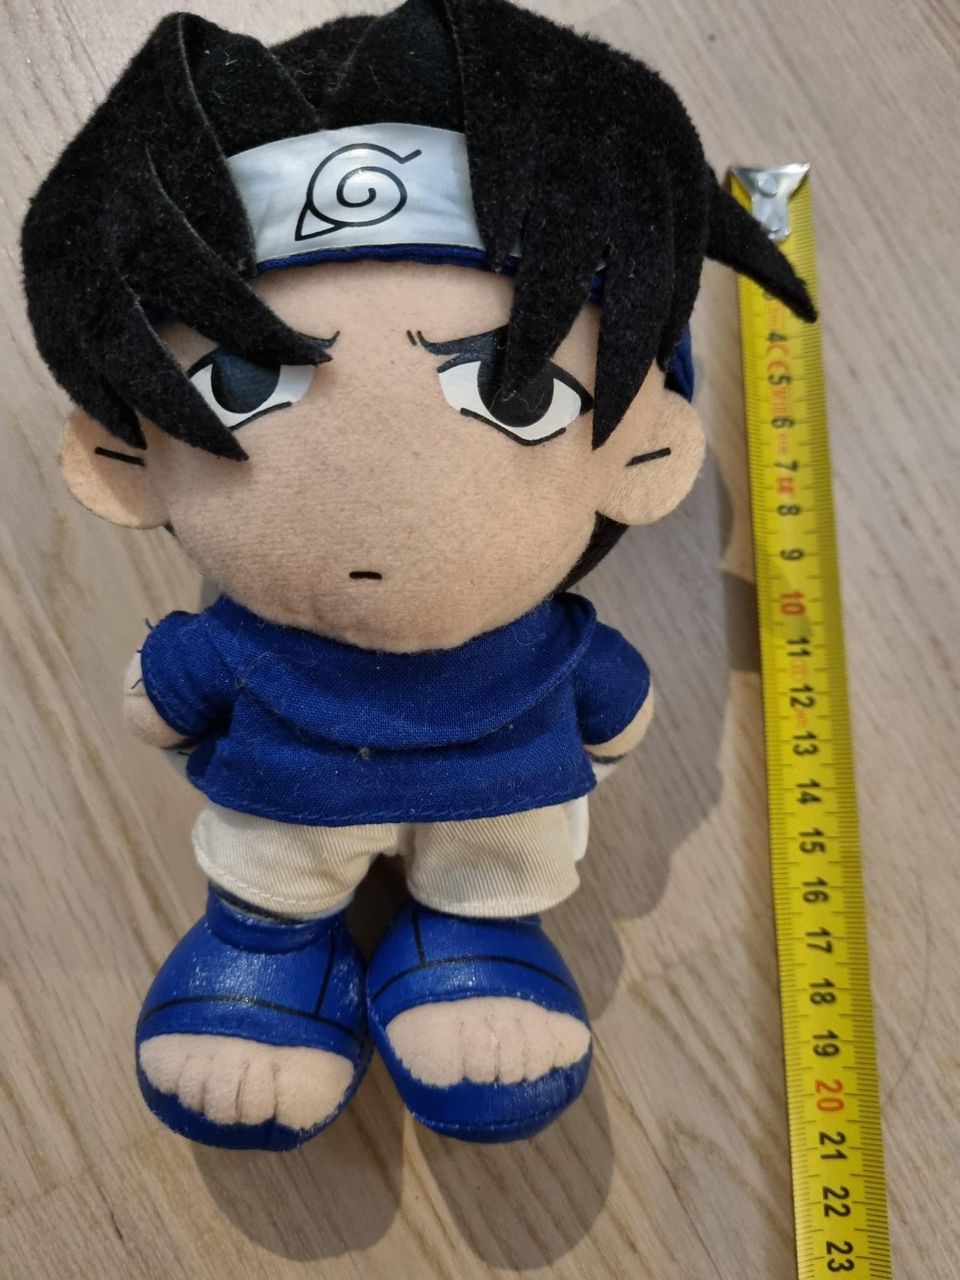 Sasuke plushie pehmolelu (Naruto)